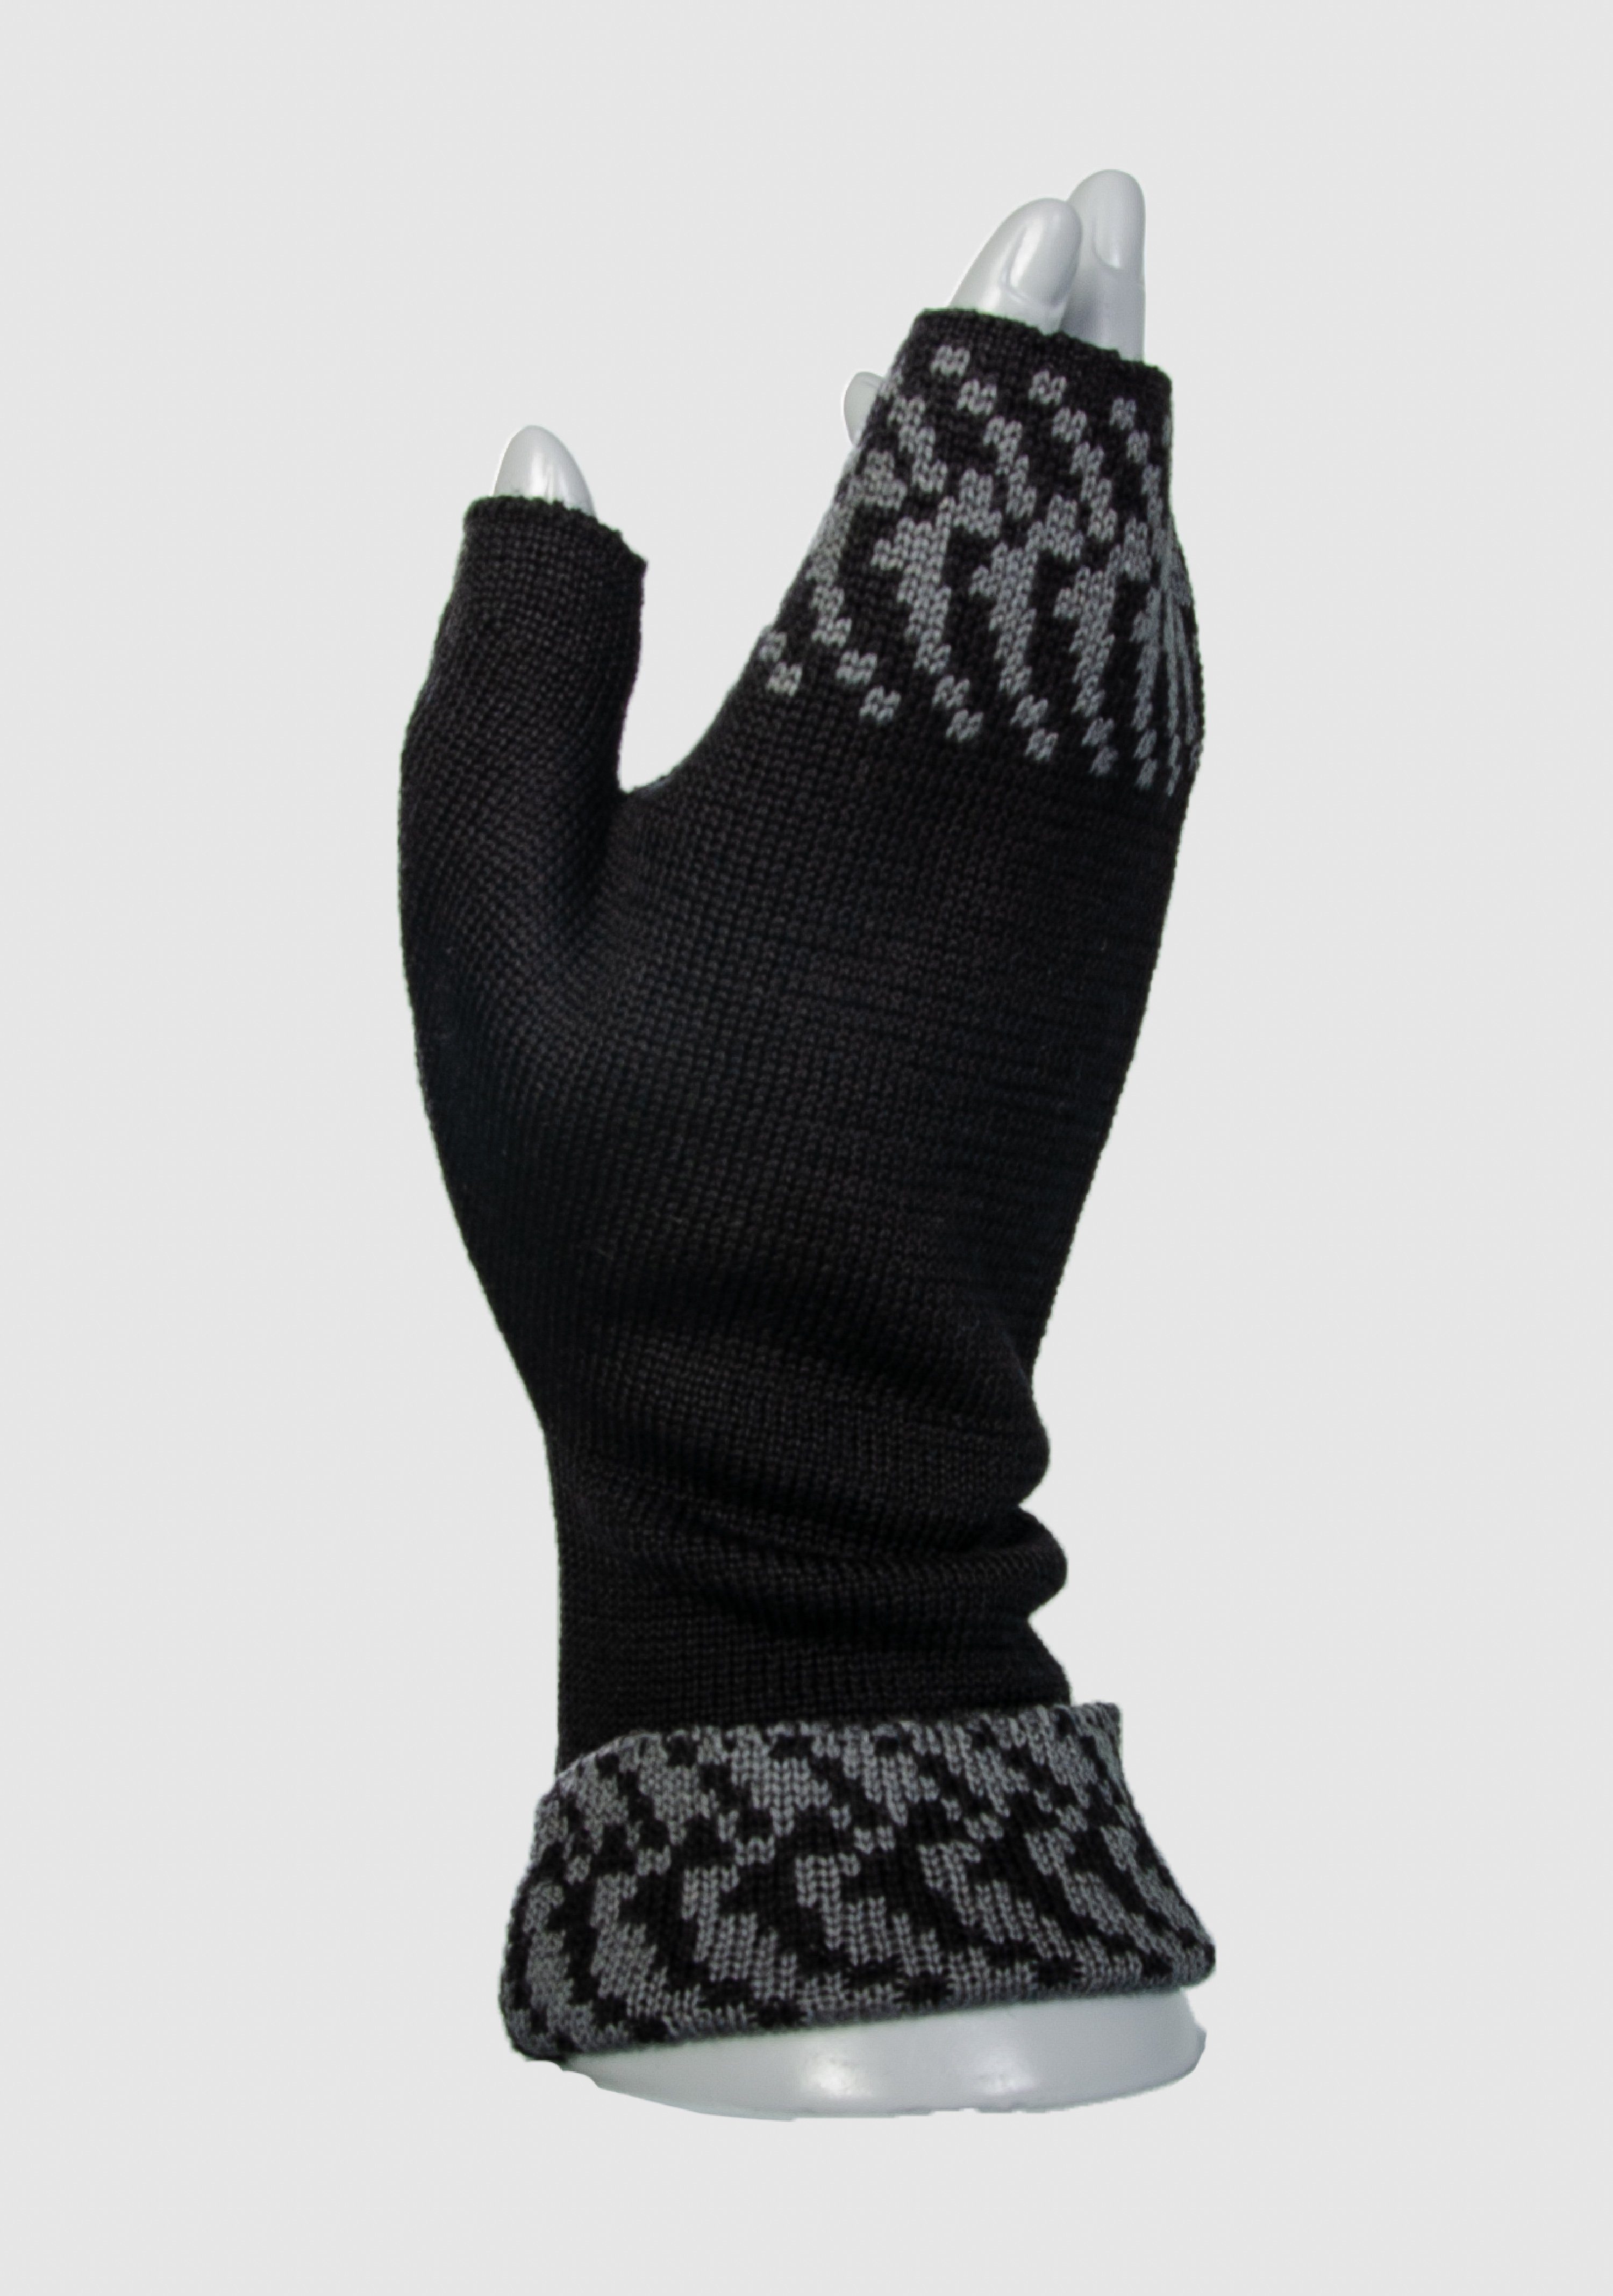 Merino Strickhandschuhe aus slow extrasoft in vielen schwarz_graphit Pixel fashion LANARTO Merino Farben Handwärmer 100%